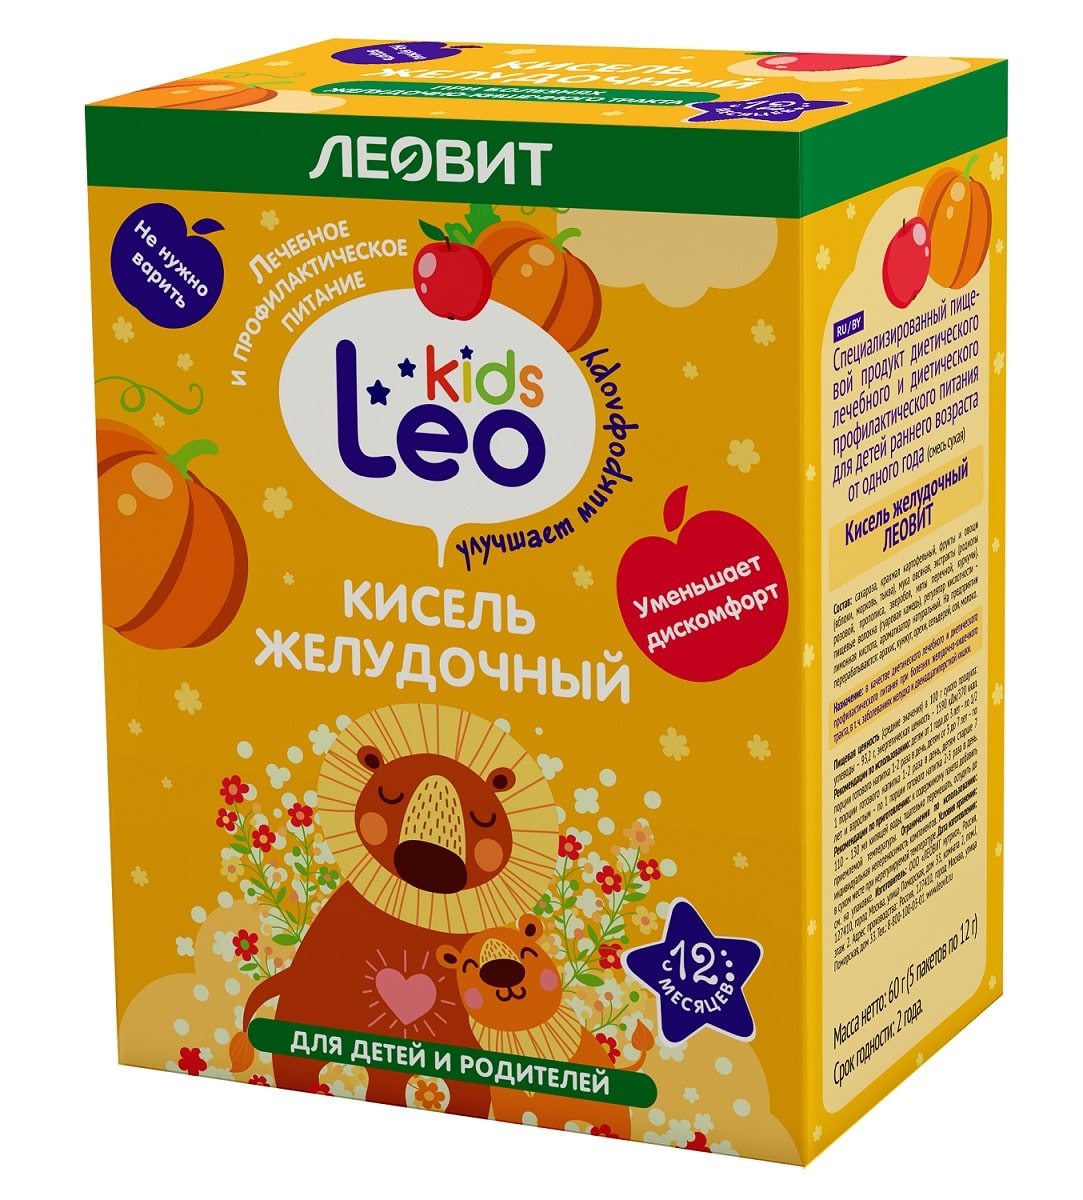 Леовит Кисель желудочный для детей, 5 пакетов х 12 г (Леовит, Leo Kids) фото 0